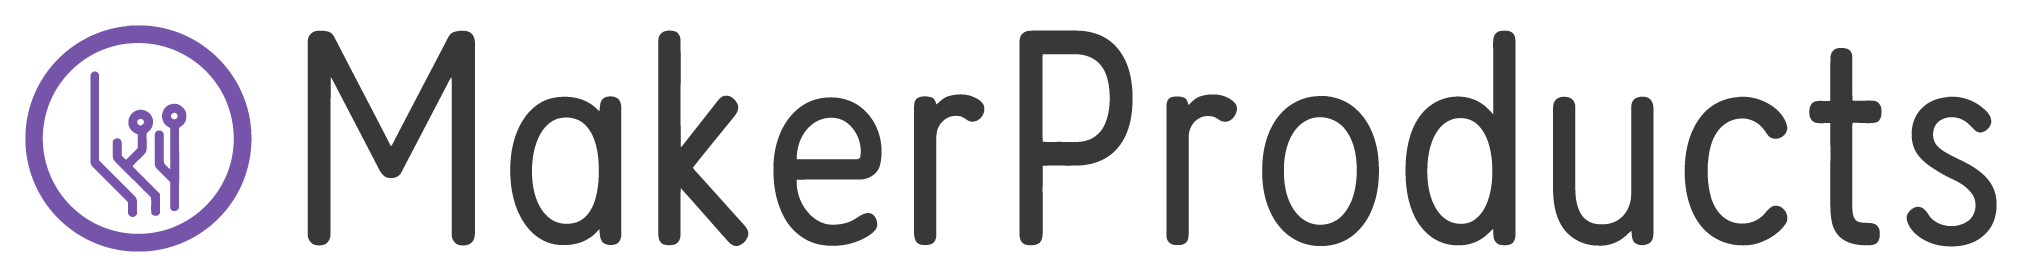 MakerProducts Logo